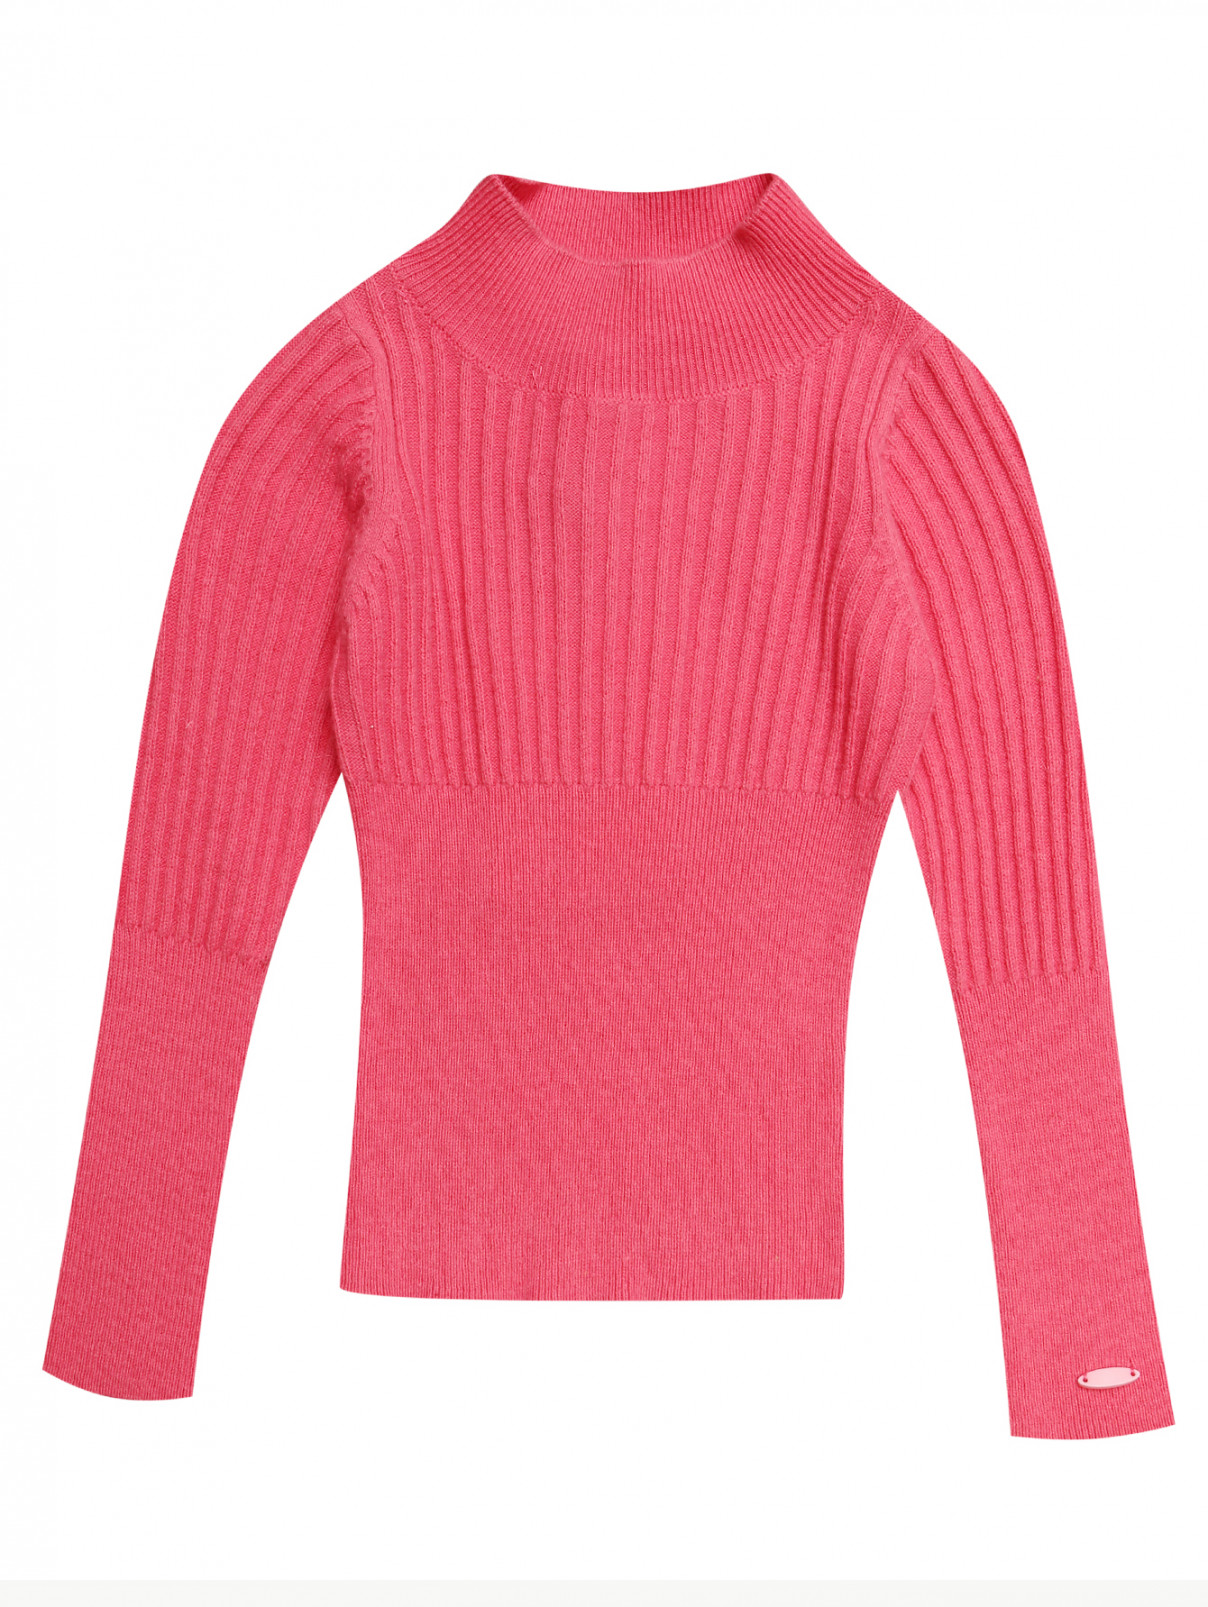 Водолазка из хлопка и шерсти текстурной вязки I Pinco Pallino  –  Общий вид  – Цвет:  Розовый